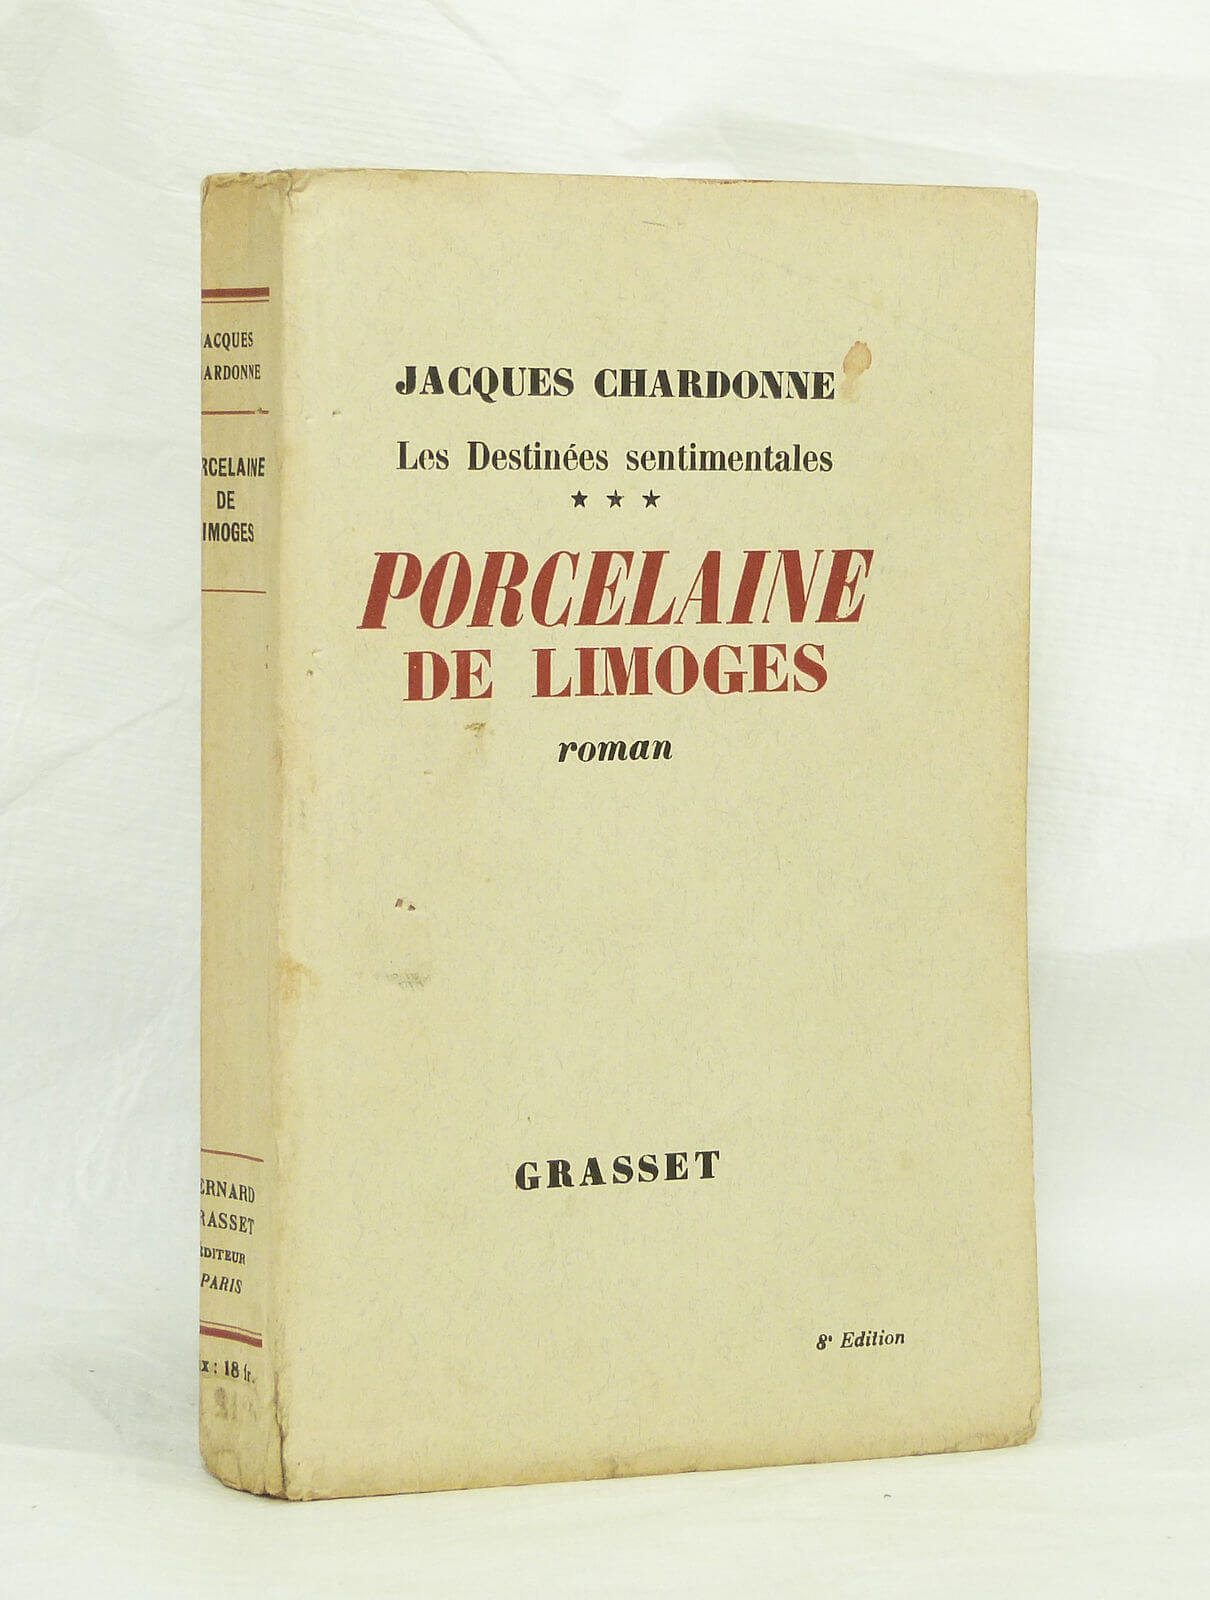 CHARDONNE (Jacques) - Porcelaine de Limoges. (Les destinées sentimentales III) - 1936